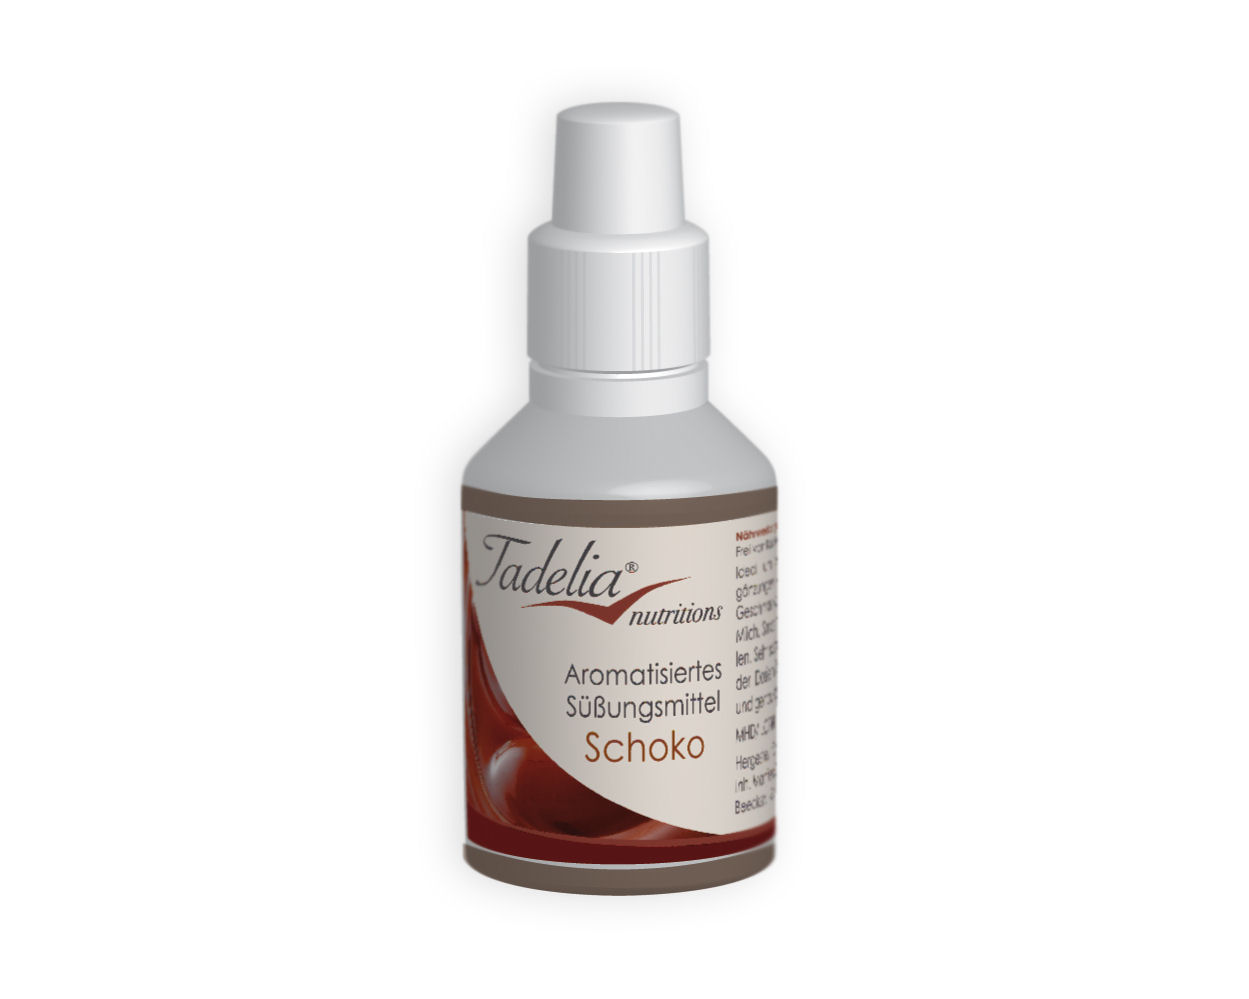 Tadelia® Aromatisiertes Süßungsmittel - Schoko 30 ml